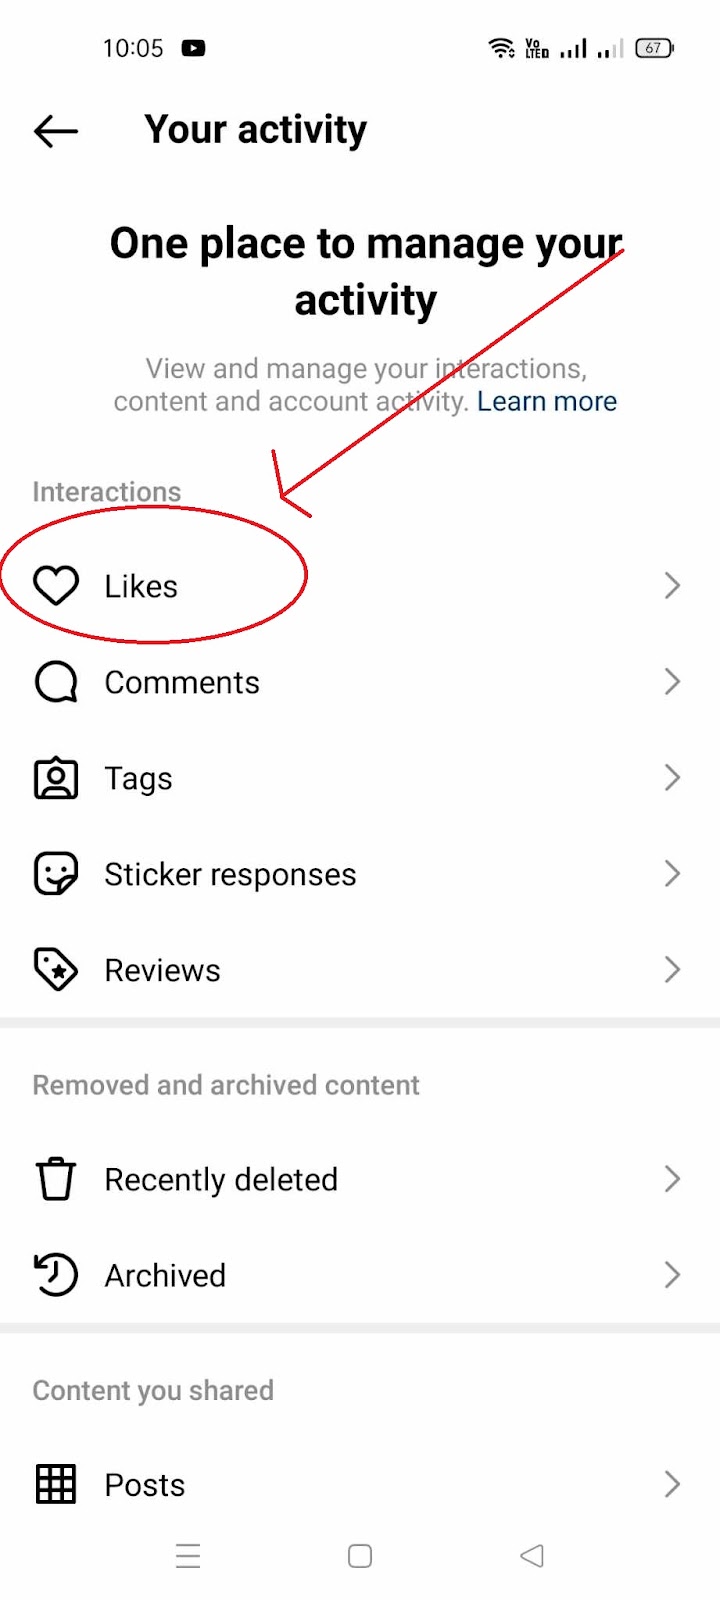 Liked Posts on Instagram - Likes